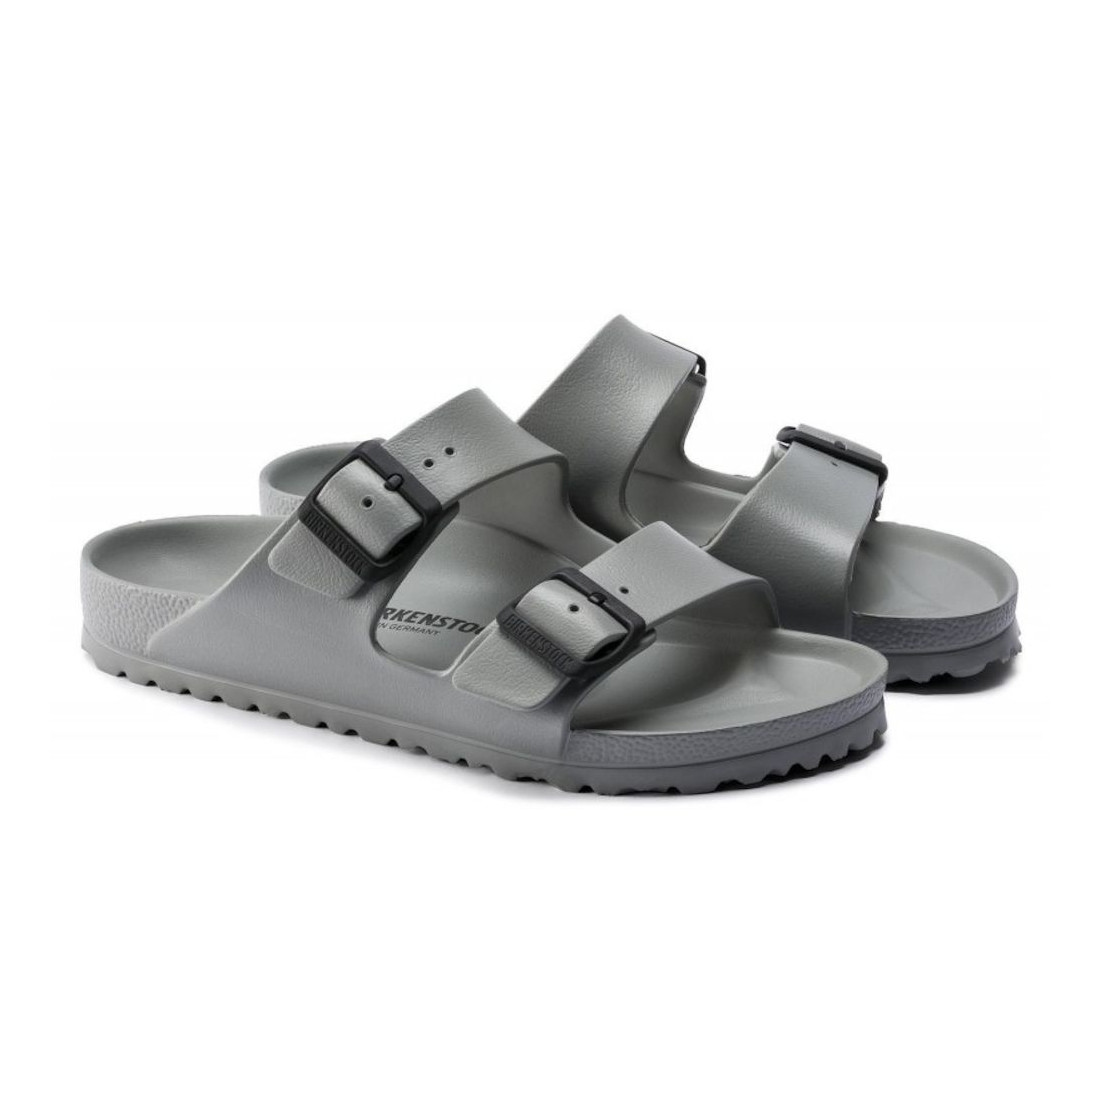 birkenstock gray sandals